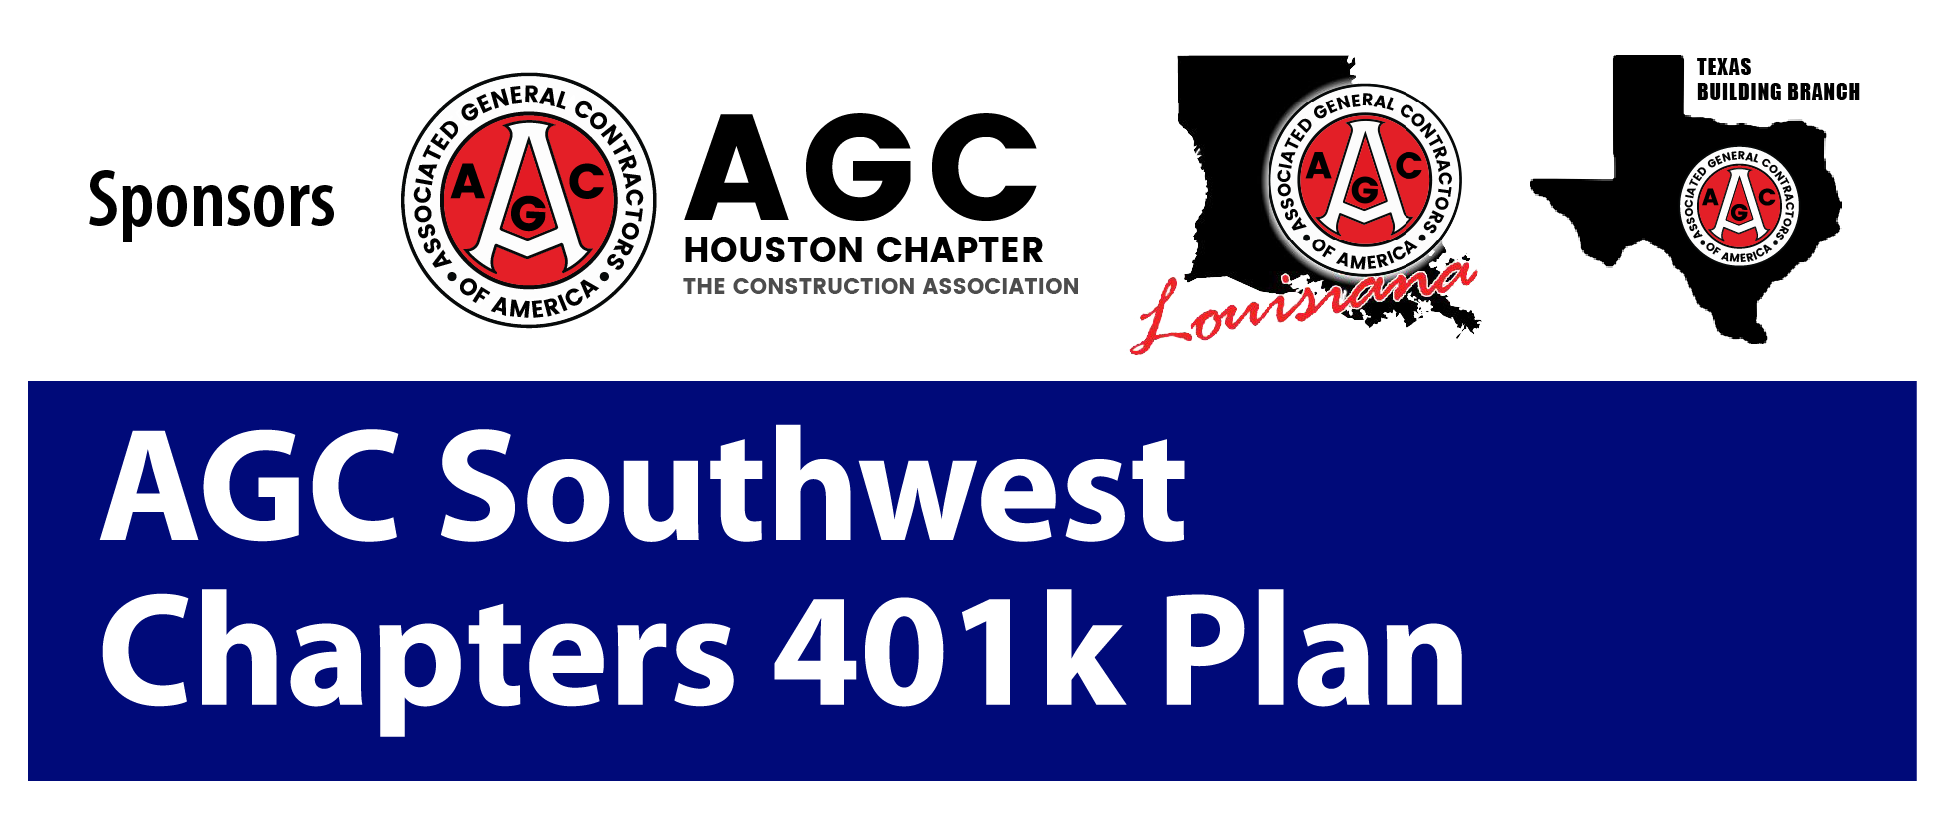 AGC 401K Plan